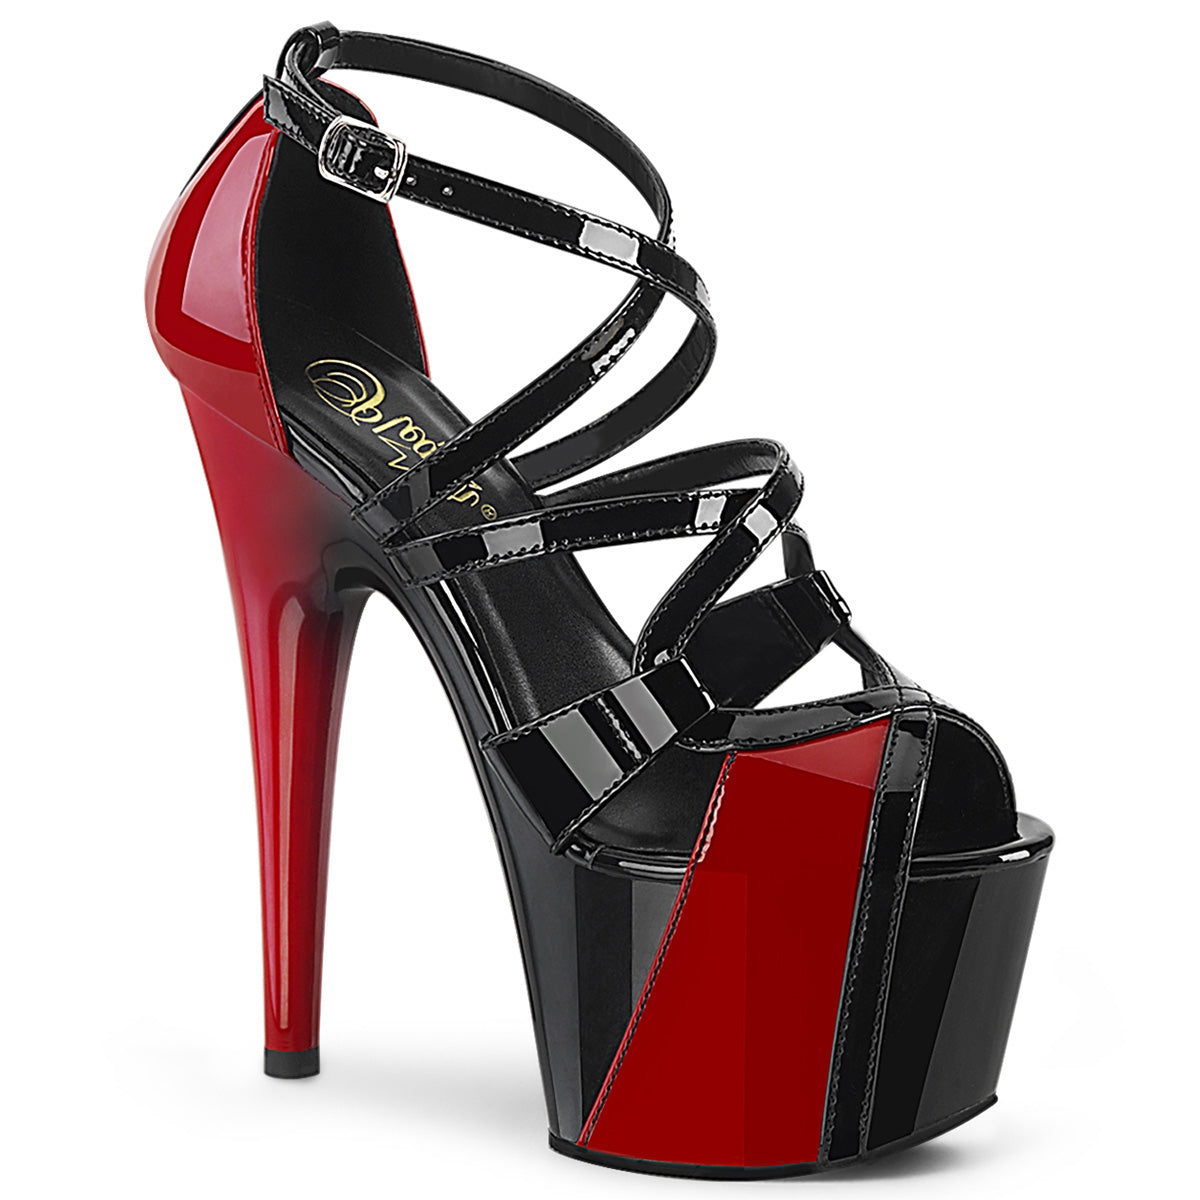 Adore-764 Pleaser 7 "каблука черных и красных стрижки сандалии